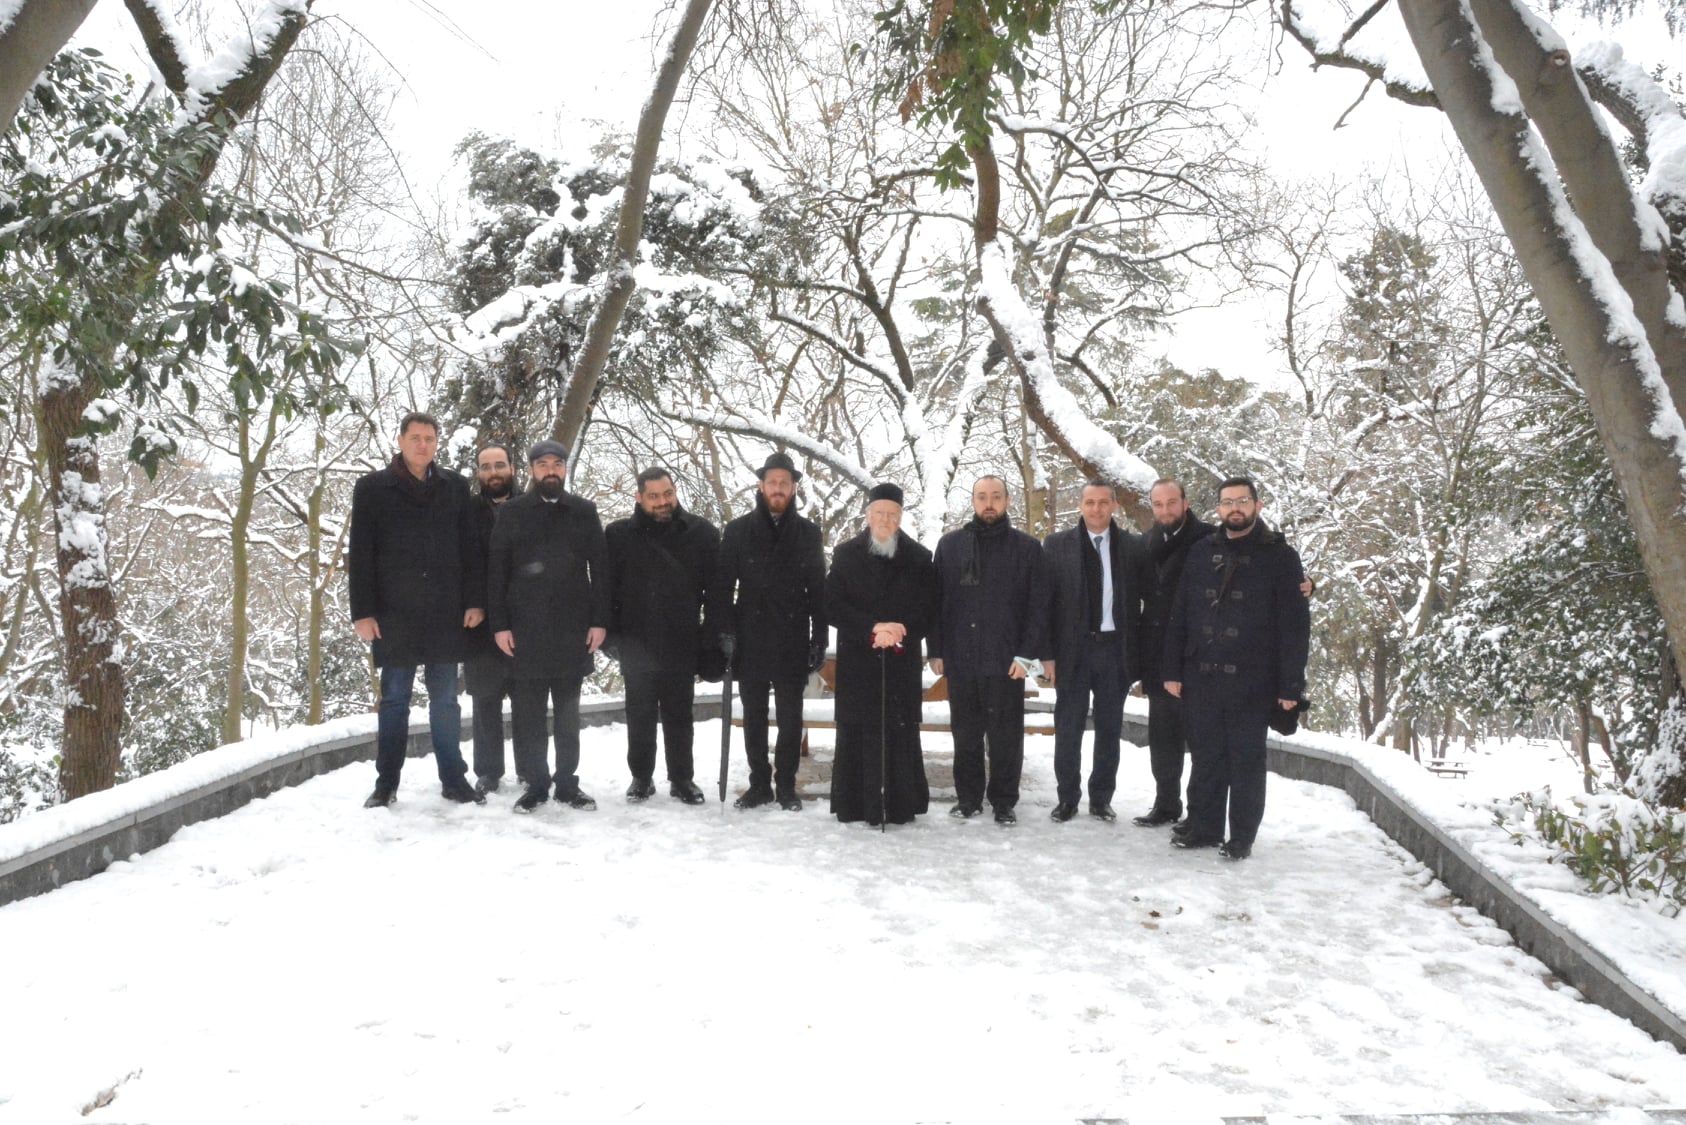 Φανάρι: Περίπατο στο χιονισμένο πάρκο του Yildiz έκανε ο Πατριάρχης Βαρθολομαίος